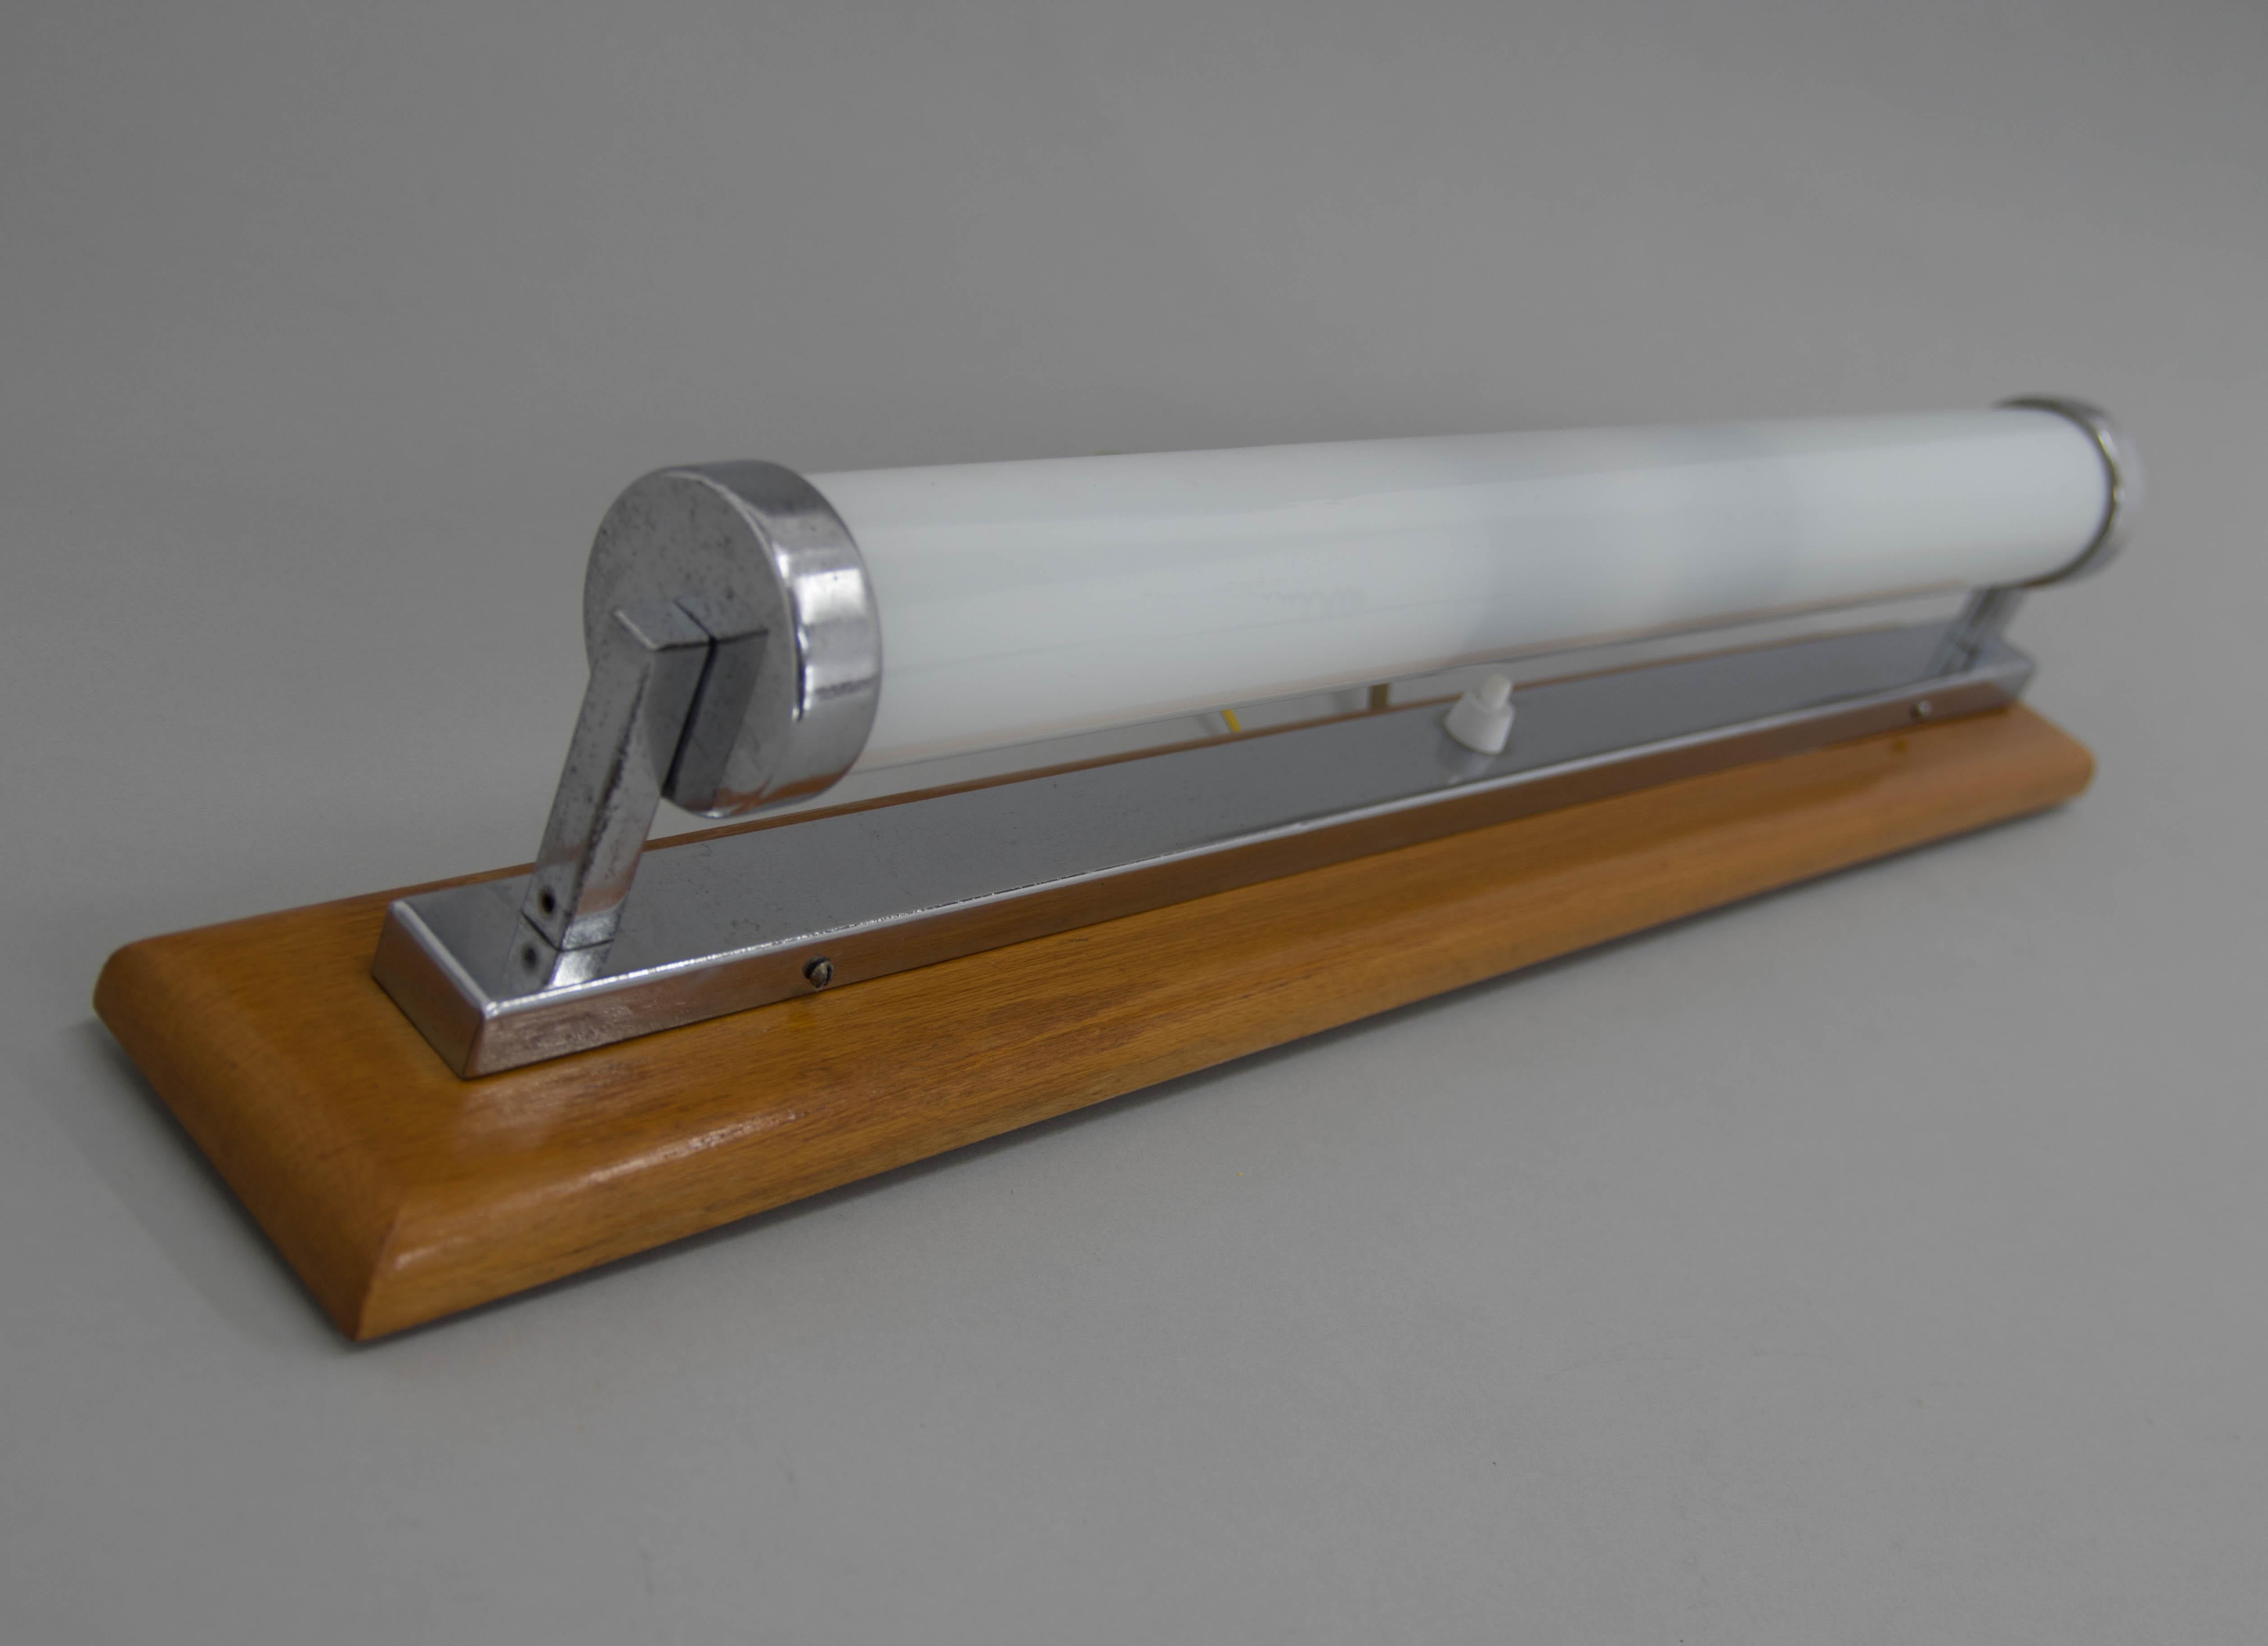 Longue applique Bauhaus avec base en bois.
Chrome avec patine d'âge mineure.
Restauré : poli.
Câblé : 2x40W, ampoules E12-E14
Compatible avec le câblage américain.